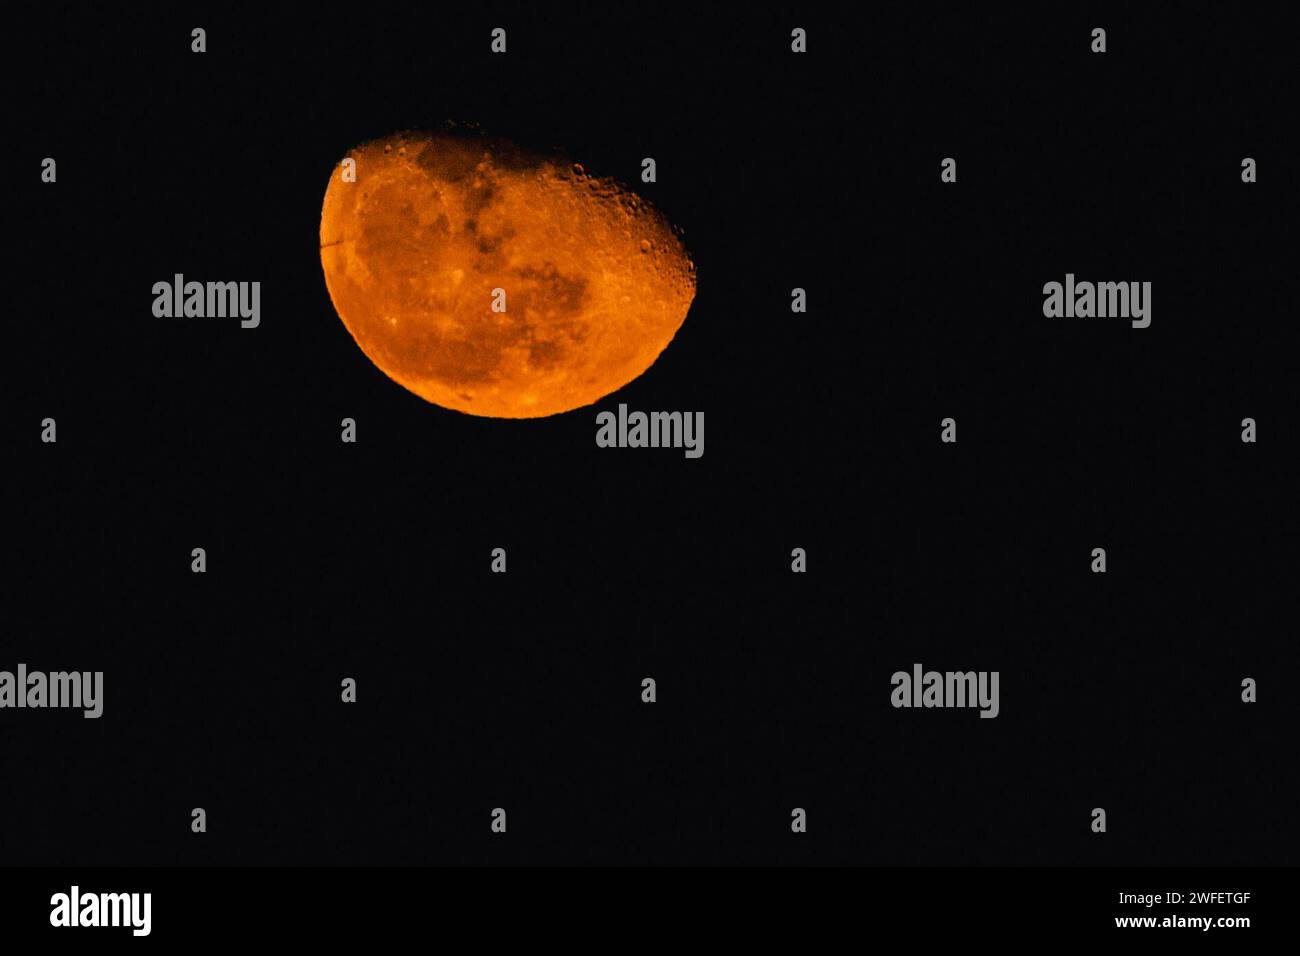 Mond, Gibbous Phase. Heute und heute Abend wird die Mondphase nachlassen. Dies ist die erste Phase nach dem Vollmond und dauert etwa 7 Tage. Der Mond hat eine kupferfarbene Farbe das Phänomen wird durch Rayleigh-Streuung des Sonnenlichts durch die Erdatmosphäre verursacht und seine Wahrnehmung wird durch die atmosphärische Brechung verstärkt. Sie tritt beim auf- oder Untergang des Mondes und während seiner Sonnenfinsternisse auf. ABPH7012 Copyright: XAntonioxBalascox Stockfoto